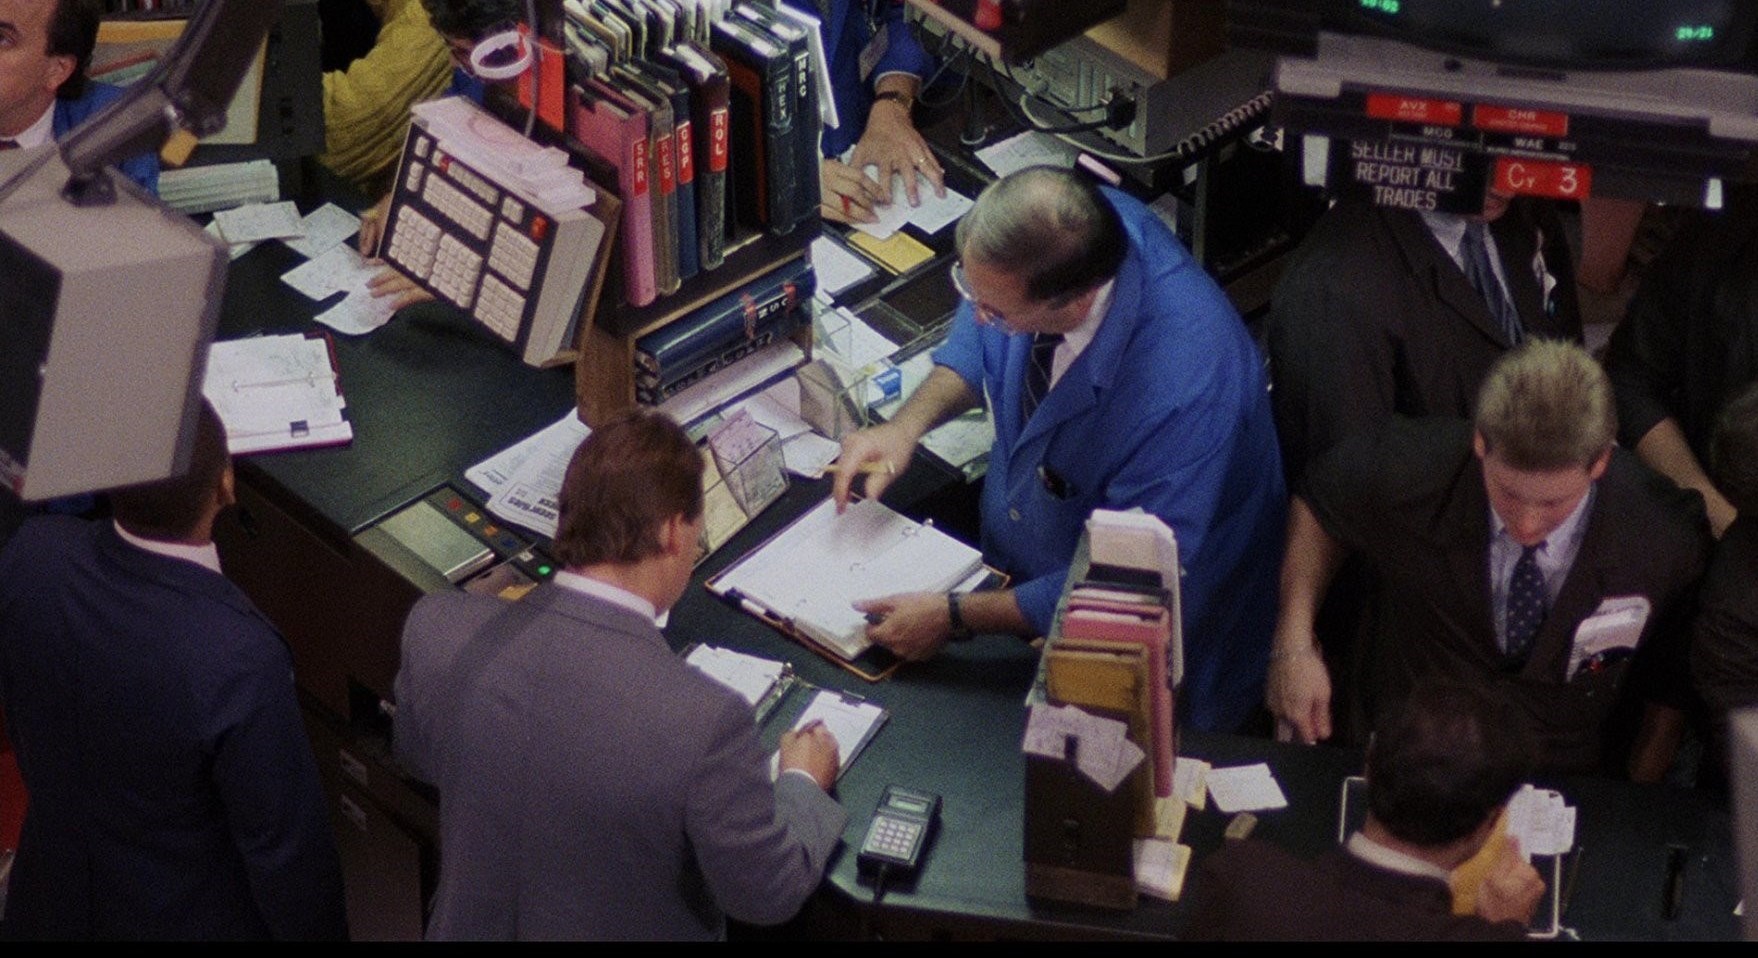 نقد و رمزگشایی فیلم Wall Street 1987 (وال استریت)